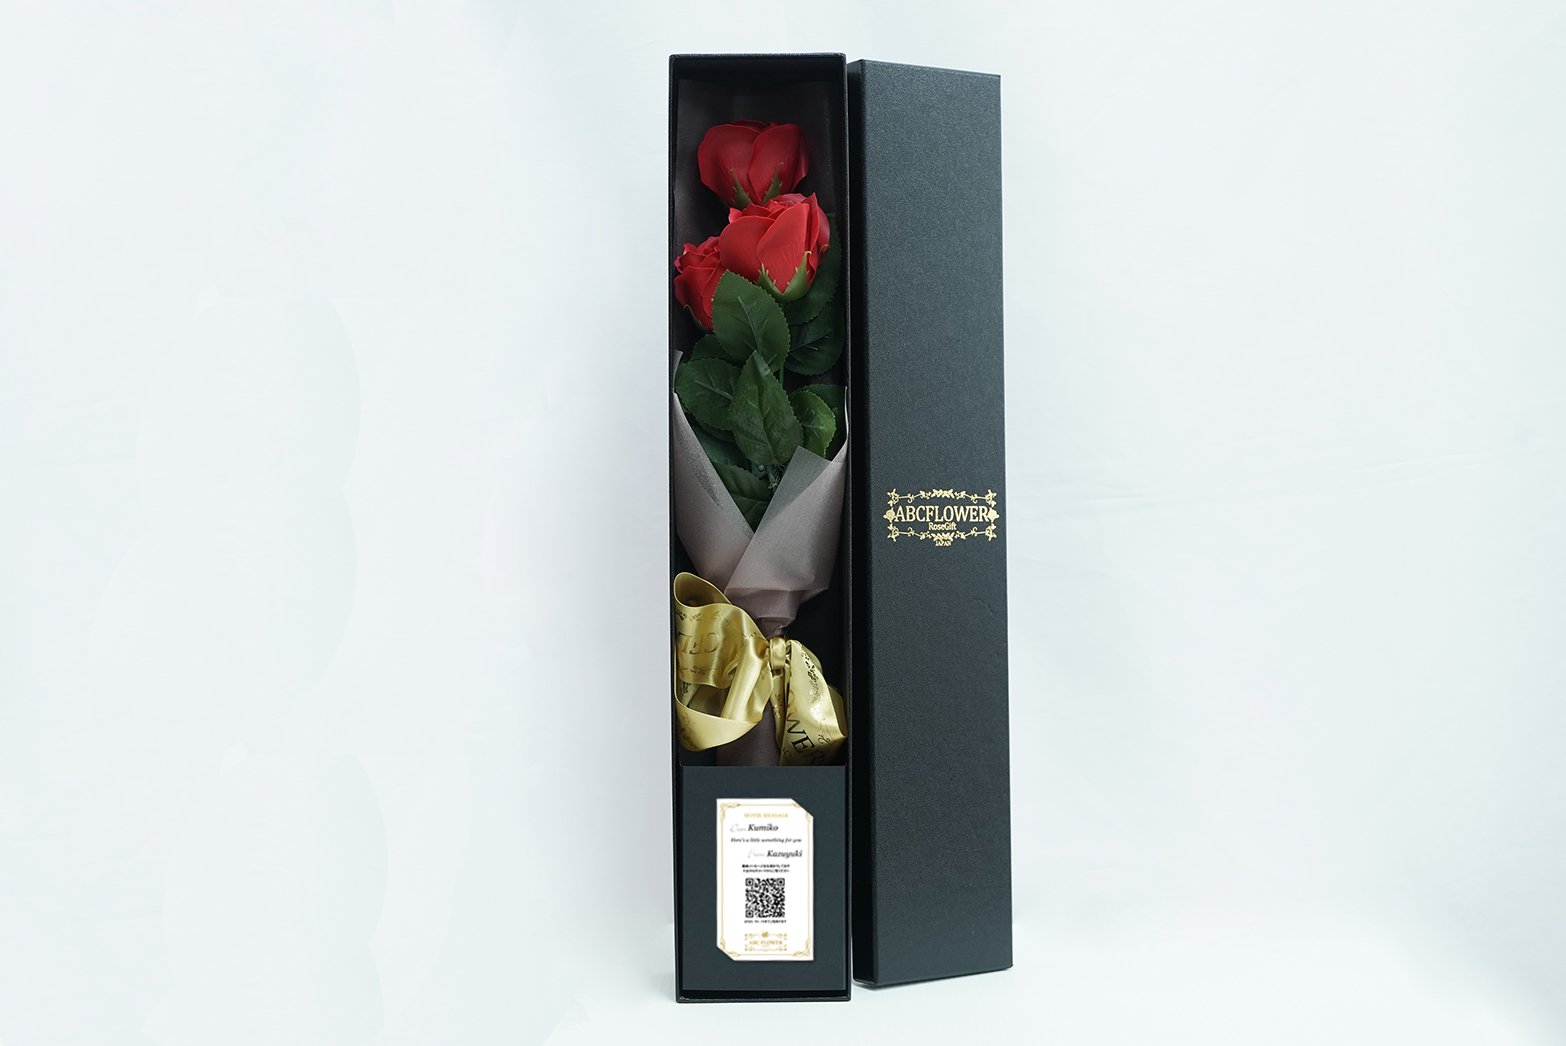 ソープフラワー 3本薔薇花束 ギフトボックス